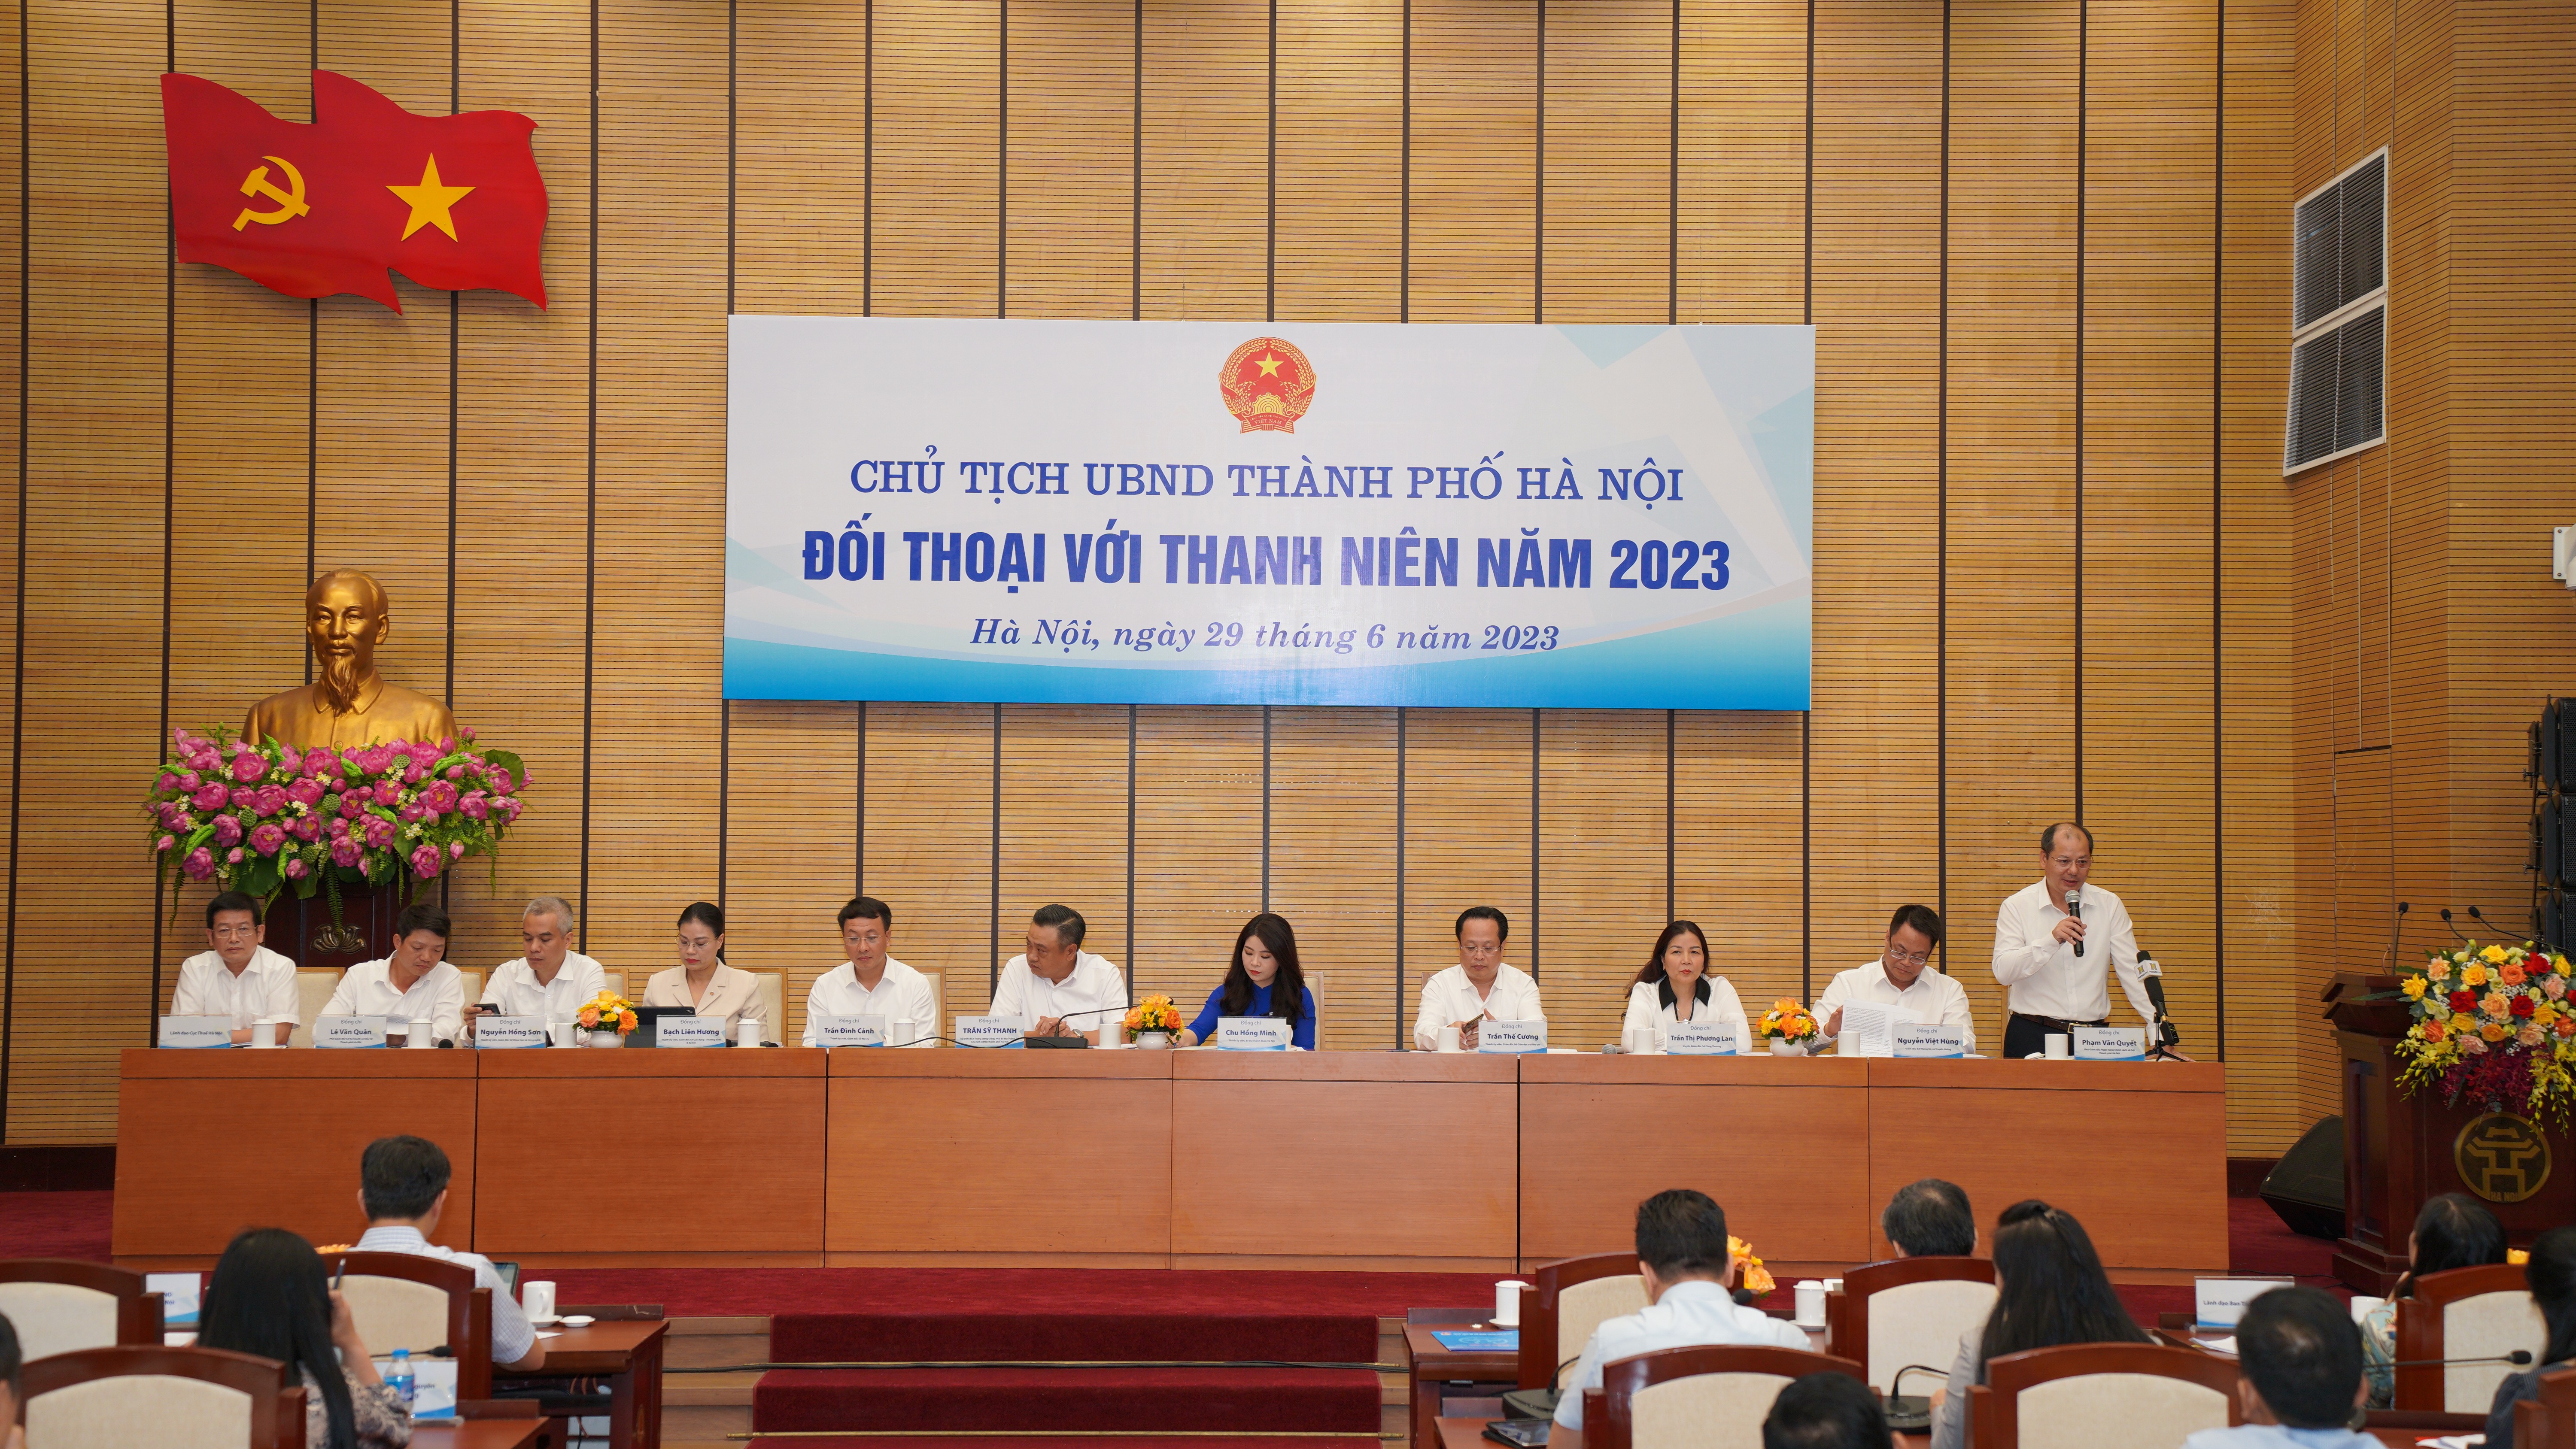 Đồng chí Phạm Văn Quyết, Phó Giám đốc Ngân hàng Chính sách thành phố Hà Nội giải đáp các thắc mắc của thanh niên